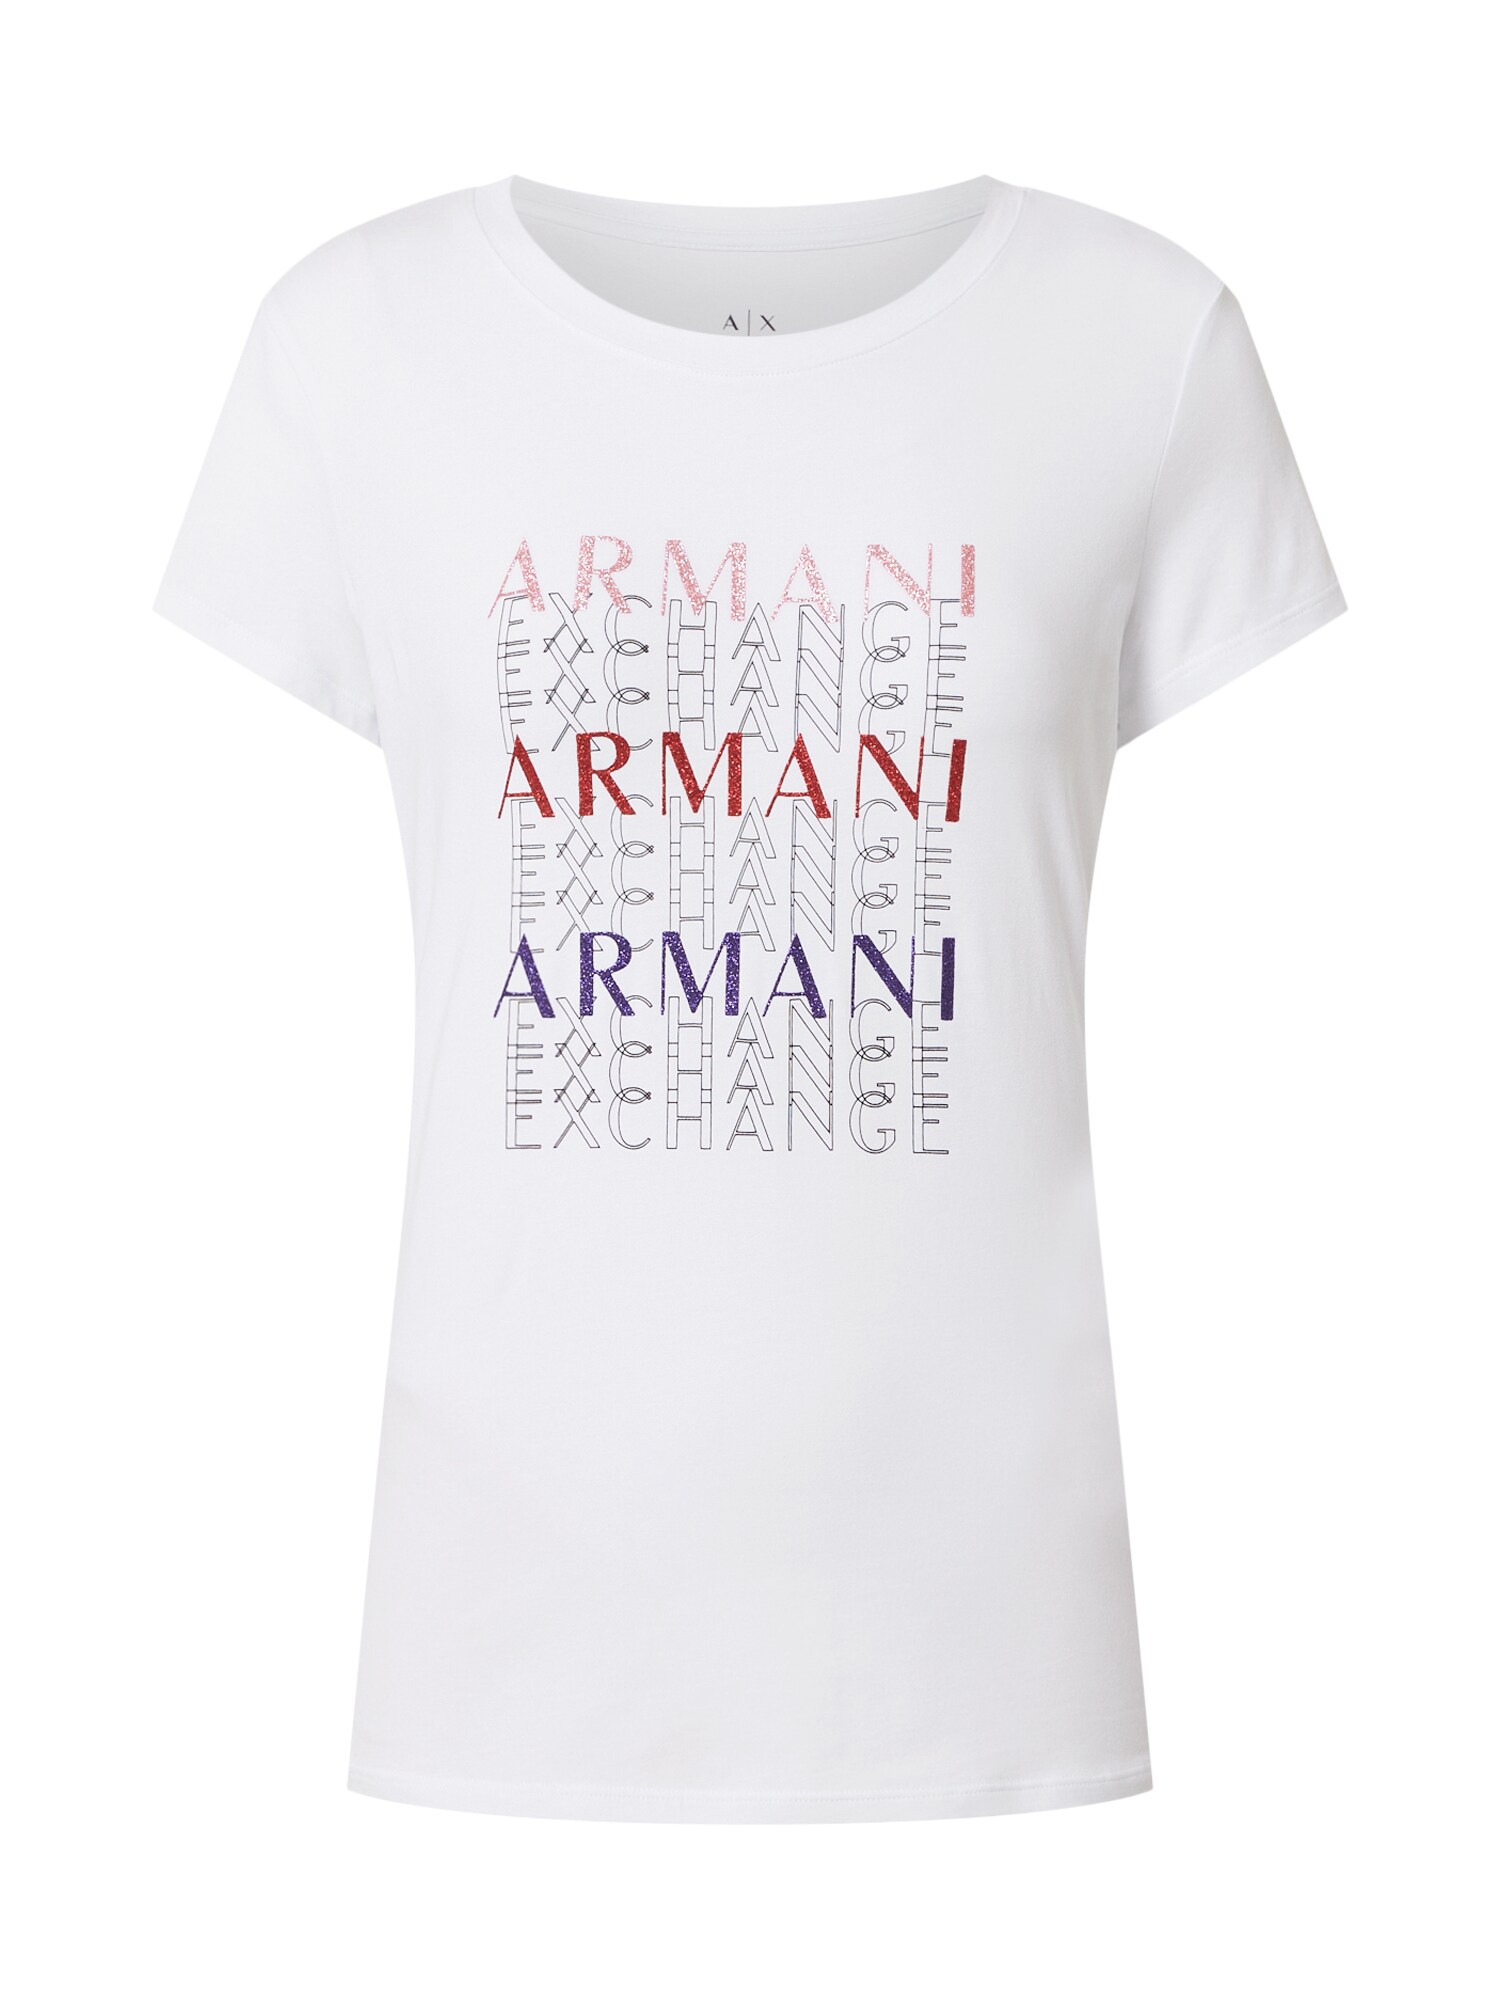 ARMANI EXCHANGE Marškinėliai '6Hytam'  balta / mišrios spalvos